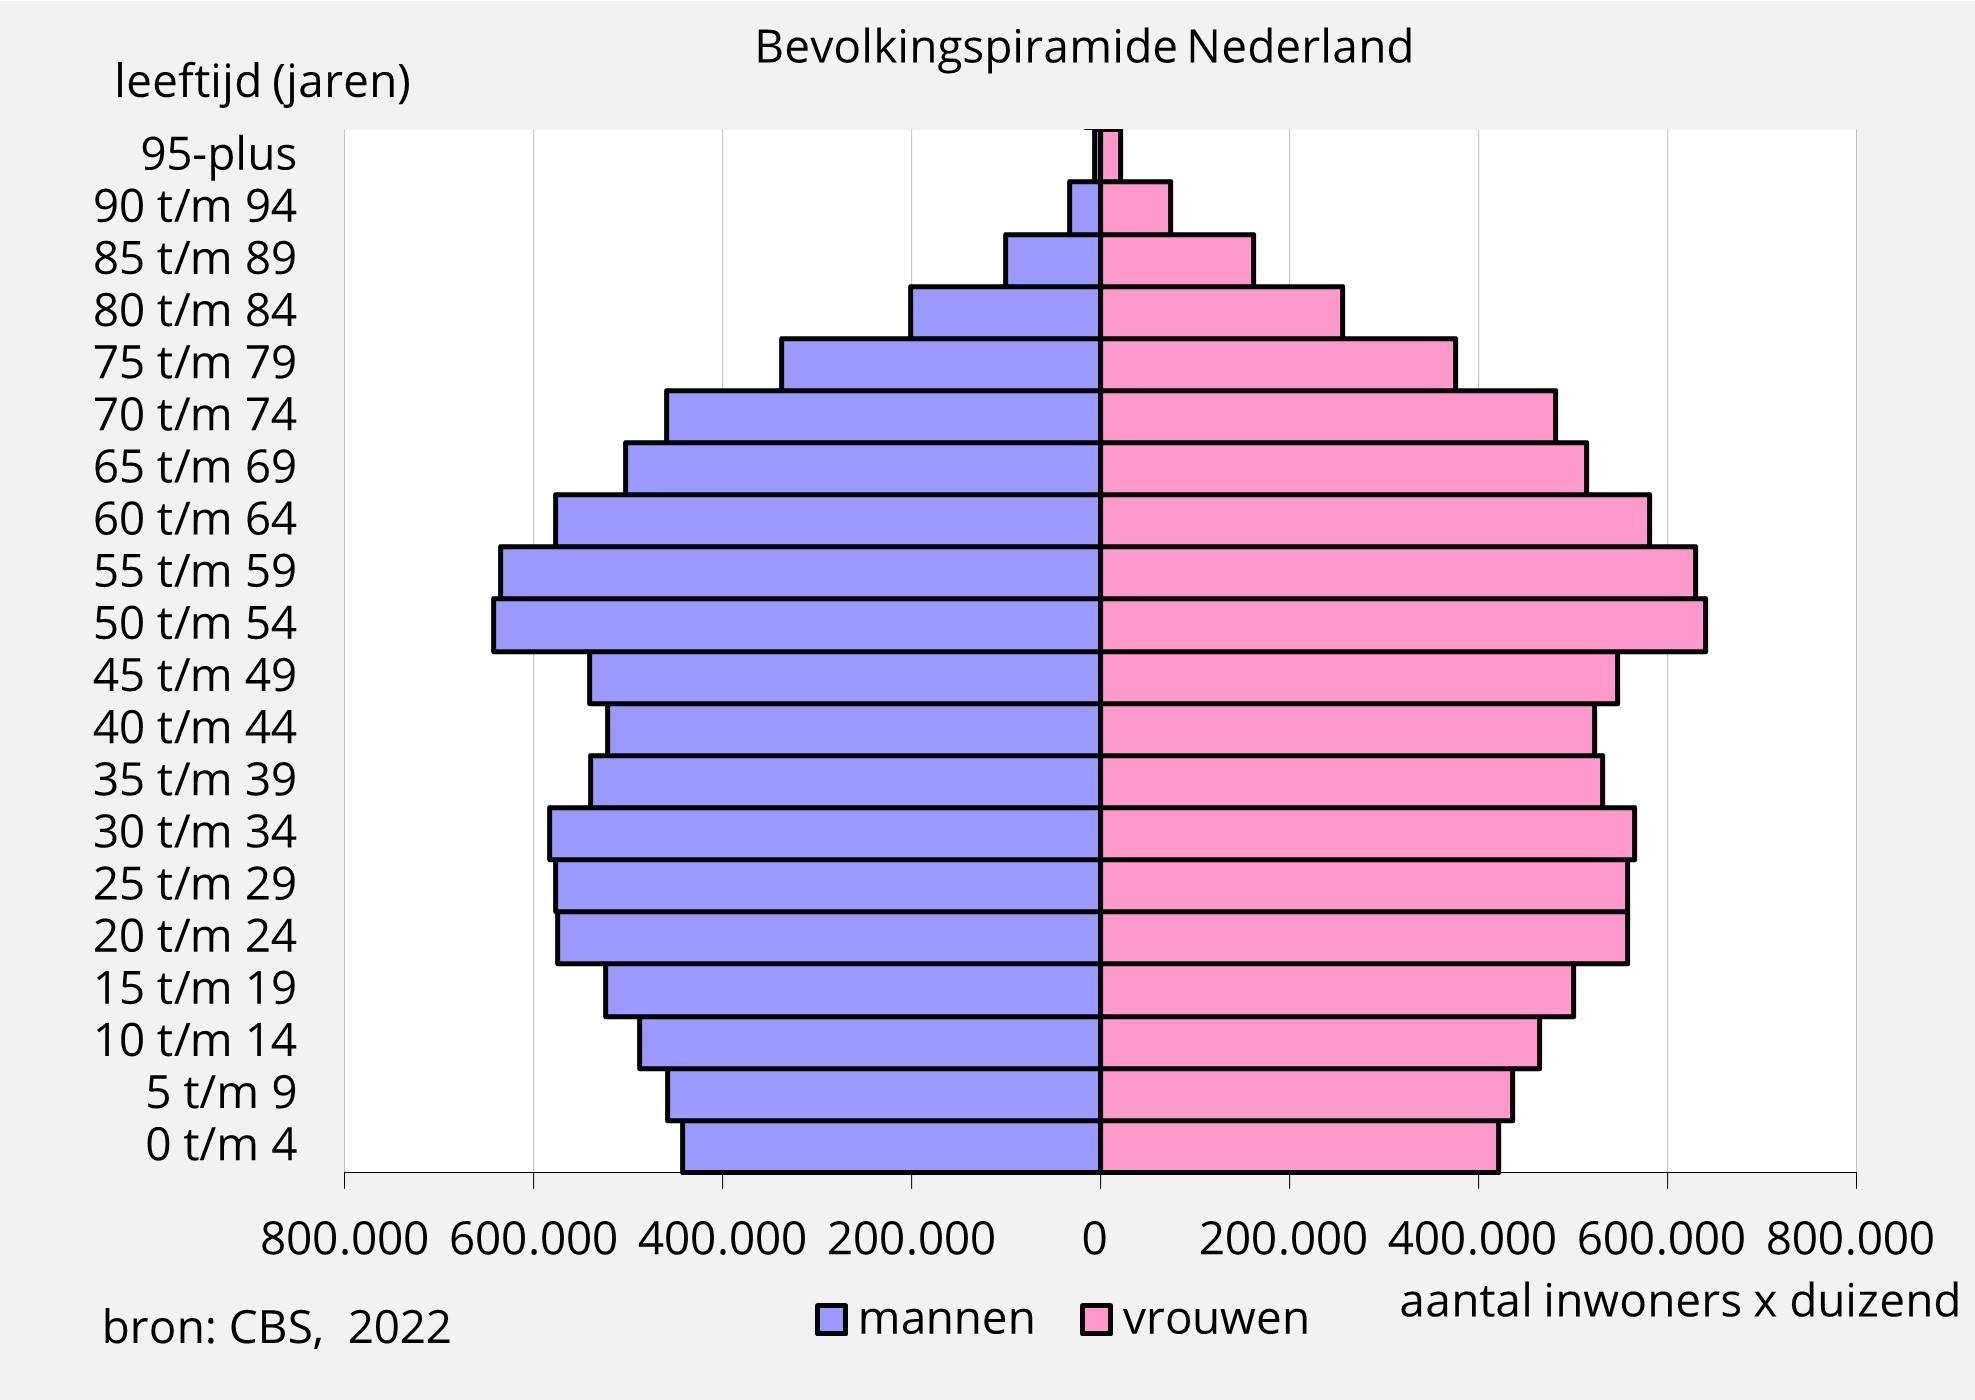 leeftijdsopbouw Nederland